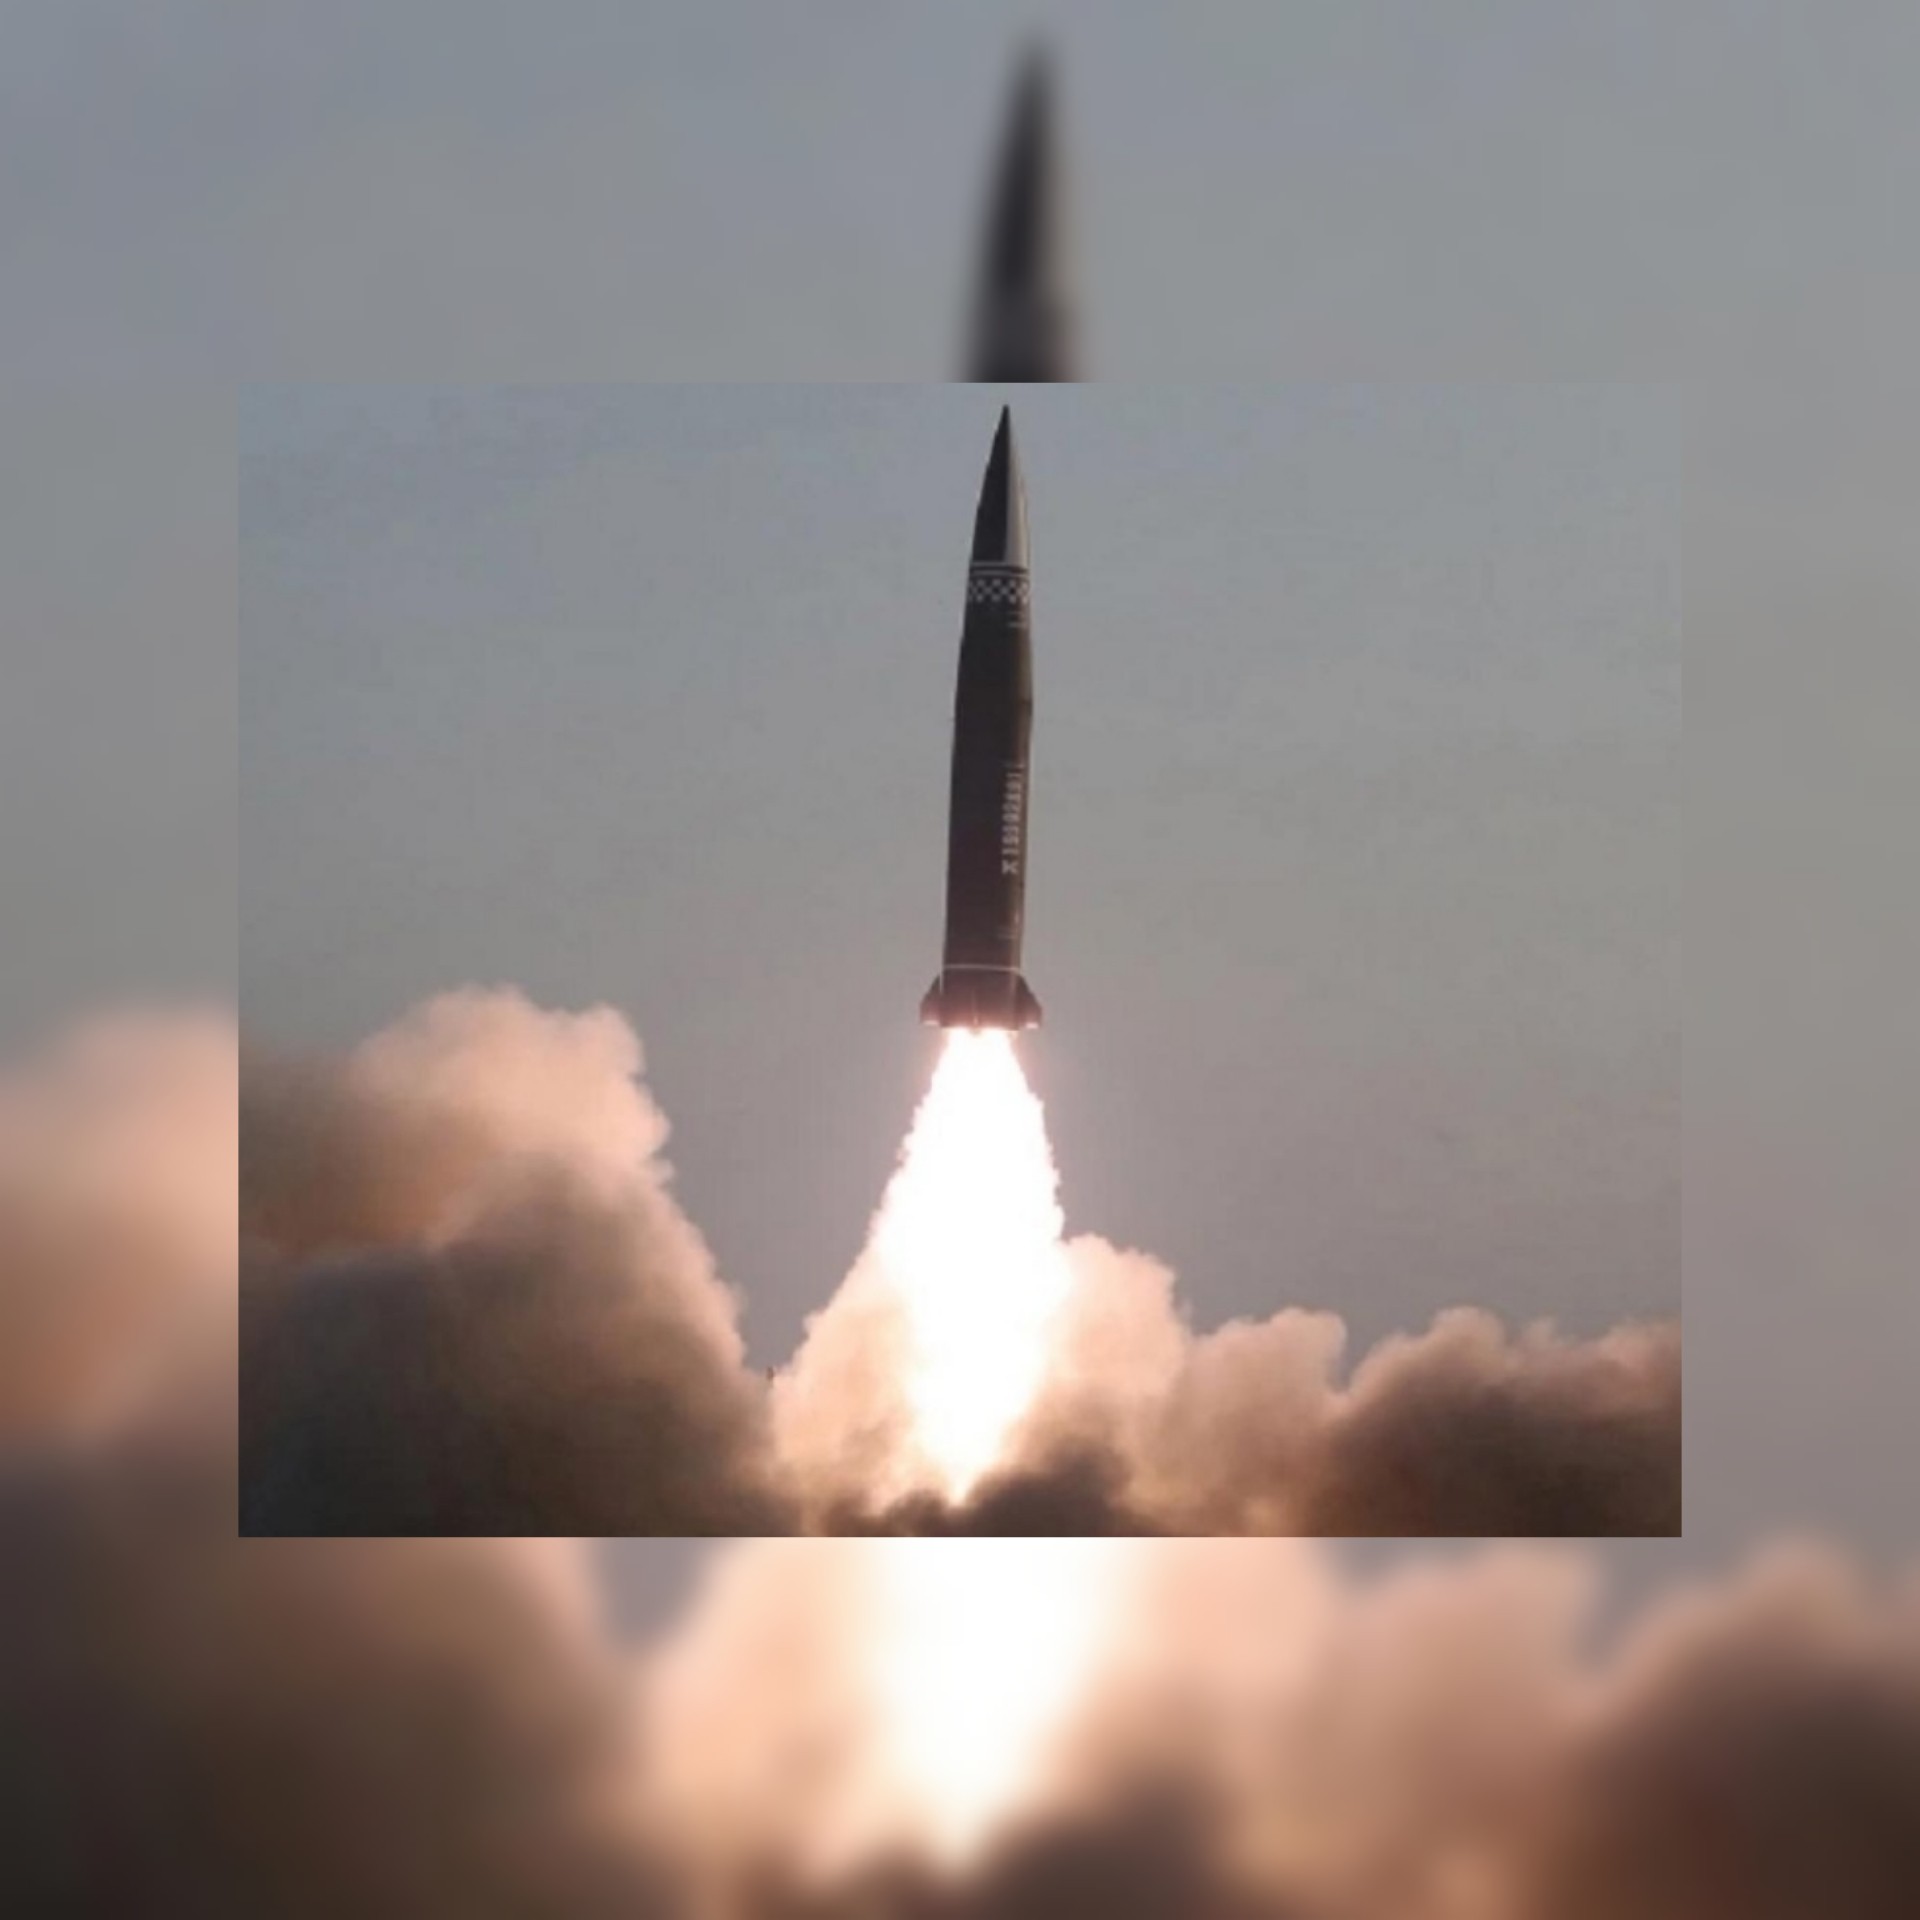 تعزيزا لقدرات بيونغ يانغ الدفاعية:  كوريا الشمالية تطلق صاروخا أسرع من الصوت تعرفوا لاهم ميزاته